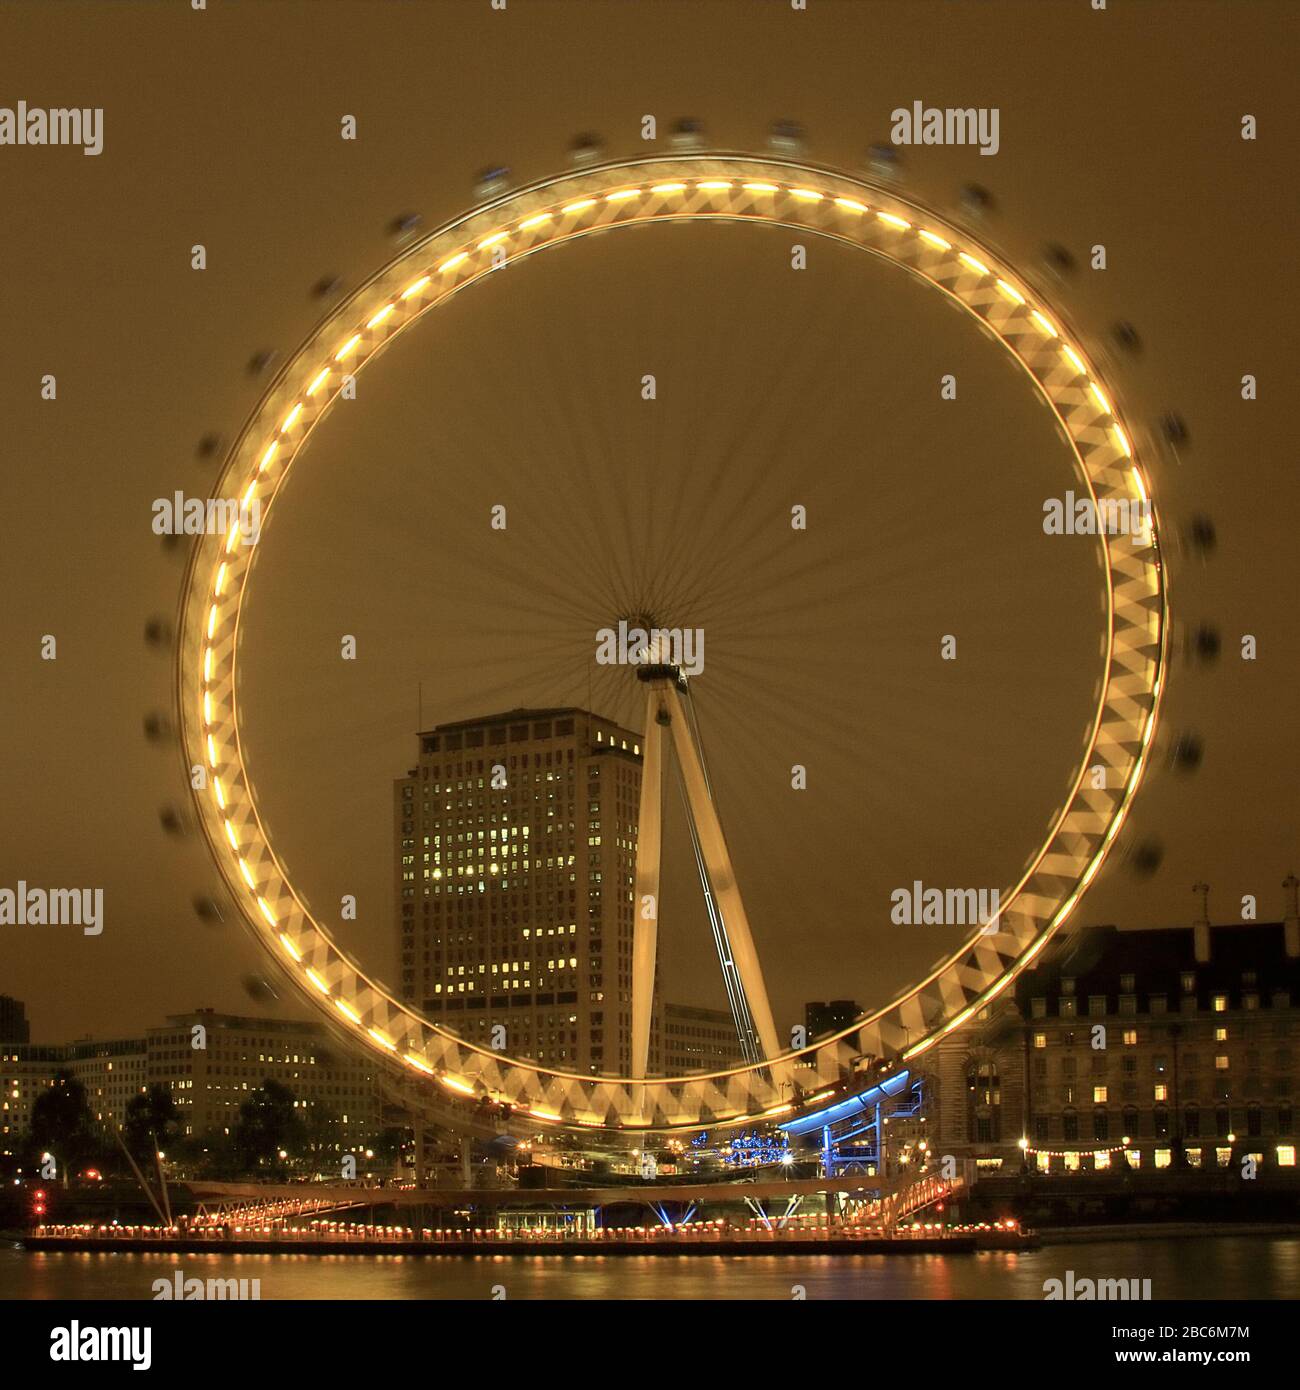 Le London Eye la nuit. Le 'Eye' est une roue géante Ferris située sur la rive sud de la Tamise, également connue sous le nom de Millennium Wheel. Banque D'Images